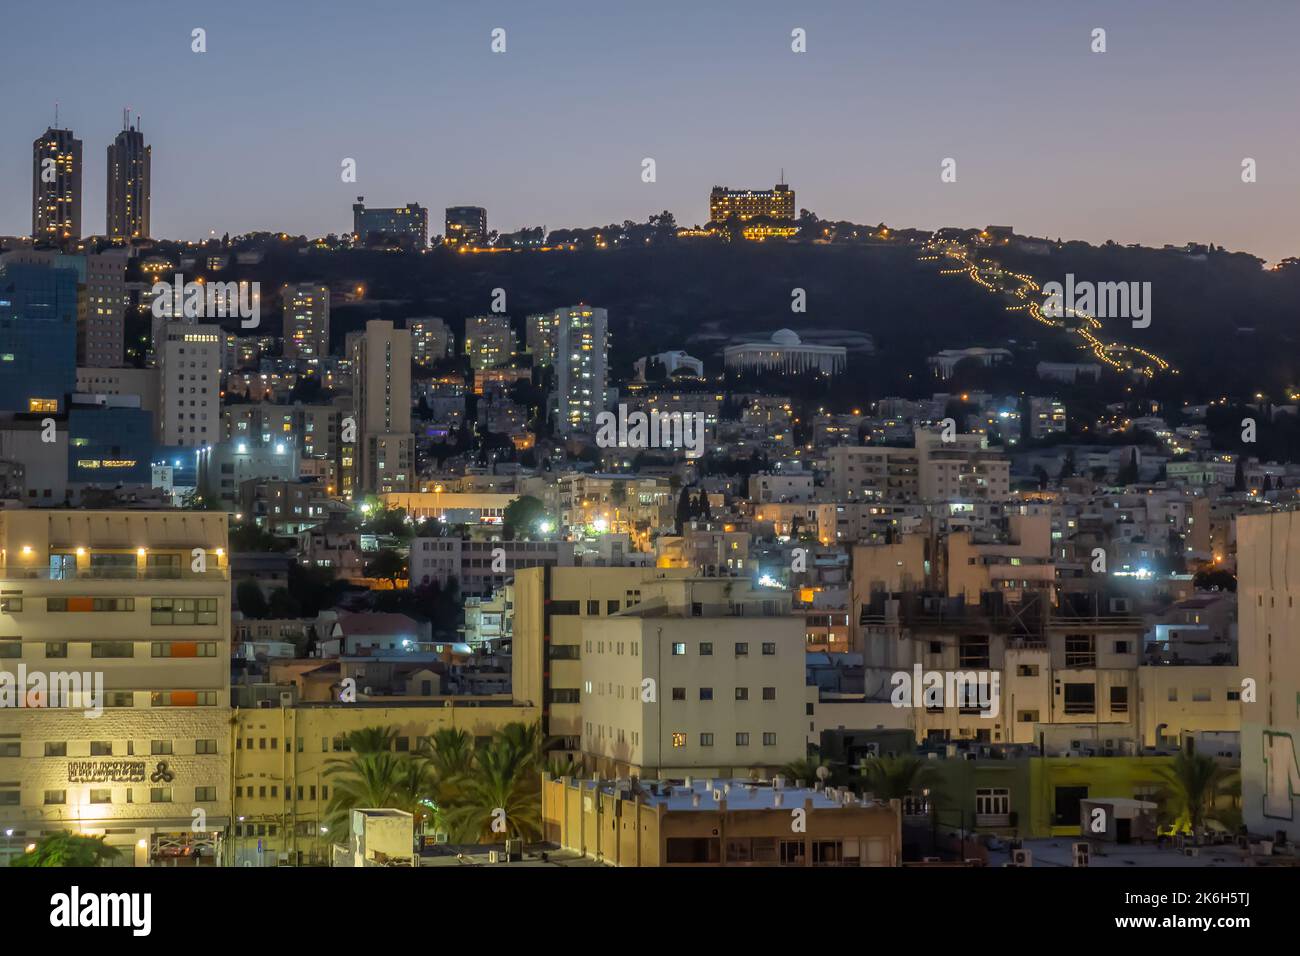 Israel, Haifa, city & Mount Carmel at dusk Stock Photo